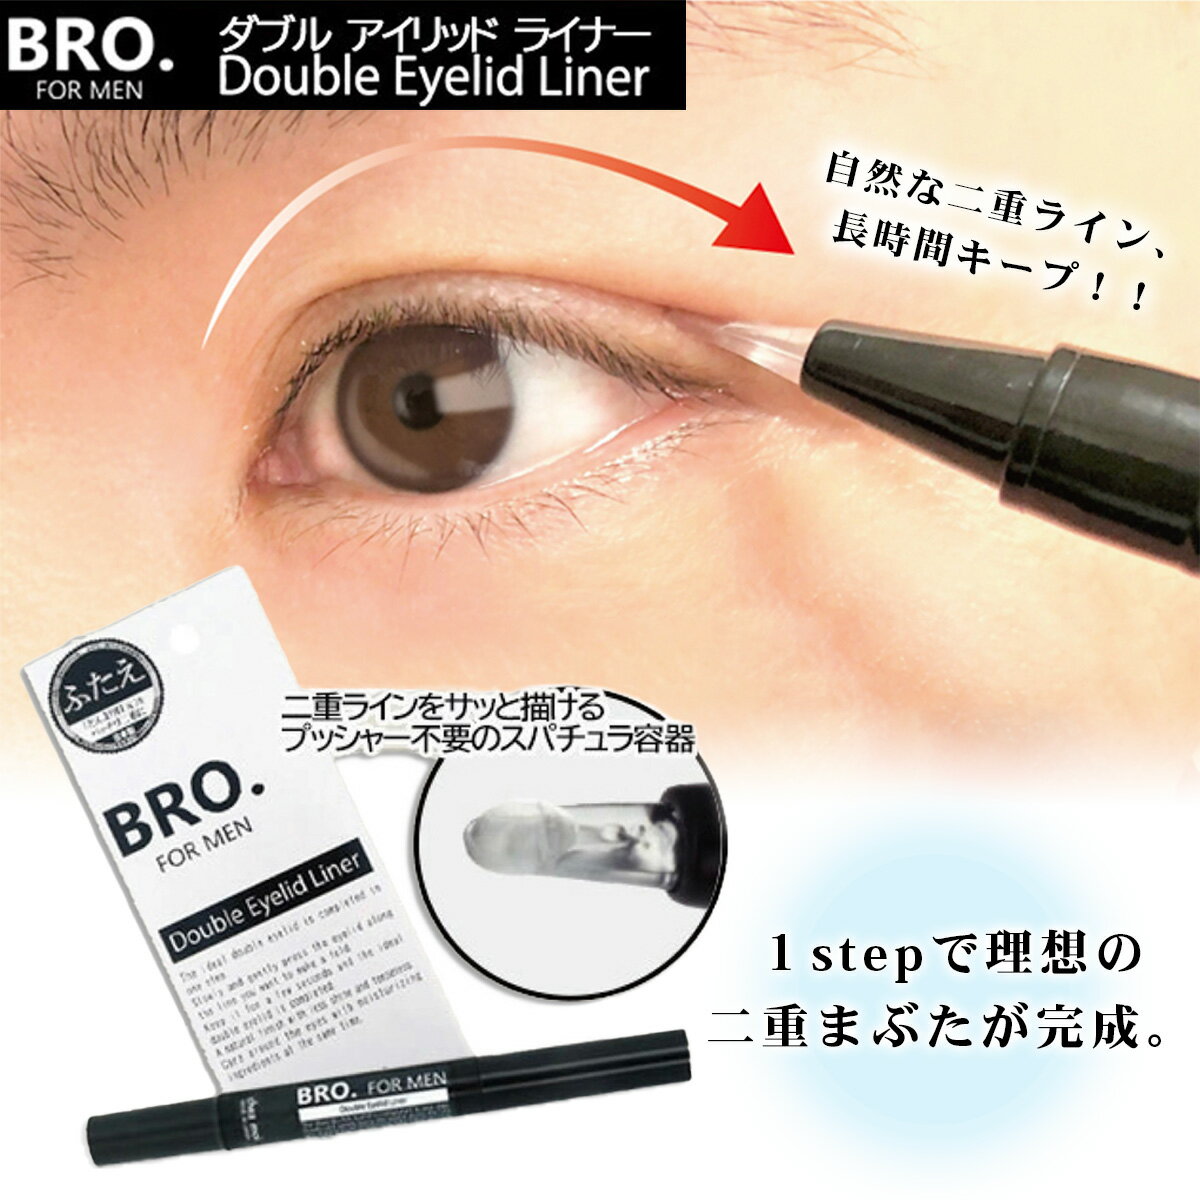 メンズ用二重アイテム BRO.FOR MEN Double Eyelid Liner 1.8ml 二重メイク 二重形成 アイプチ まぶた美容液